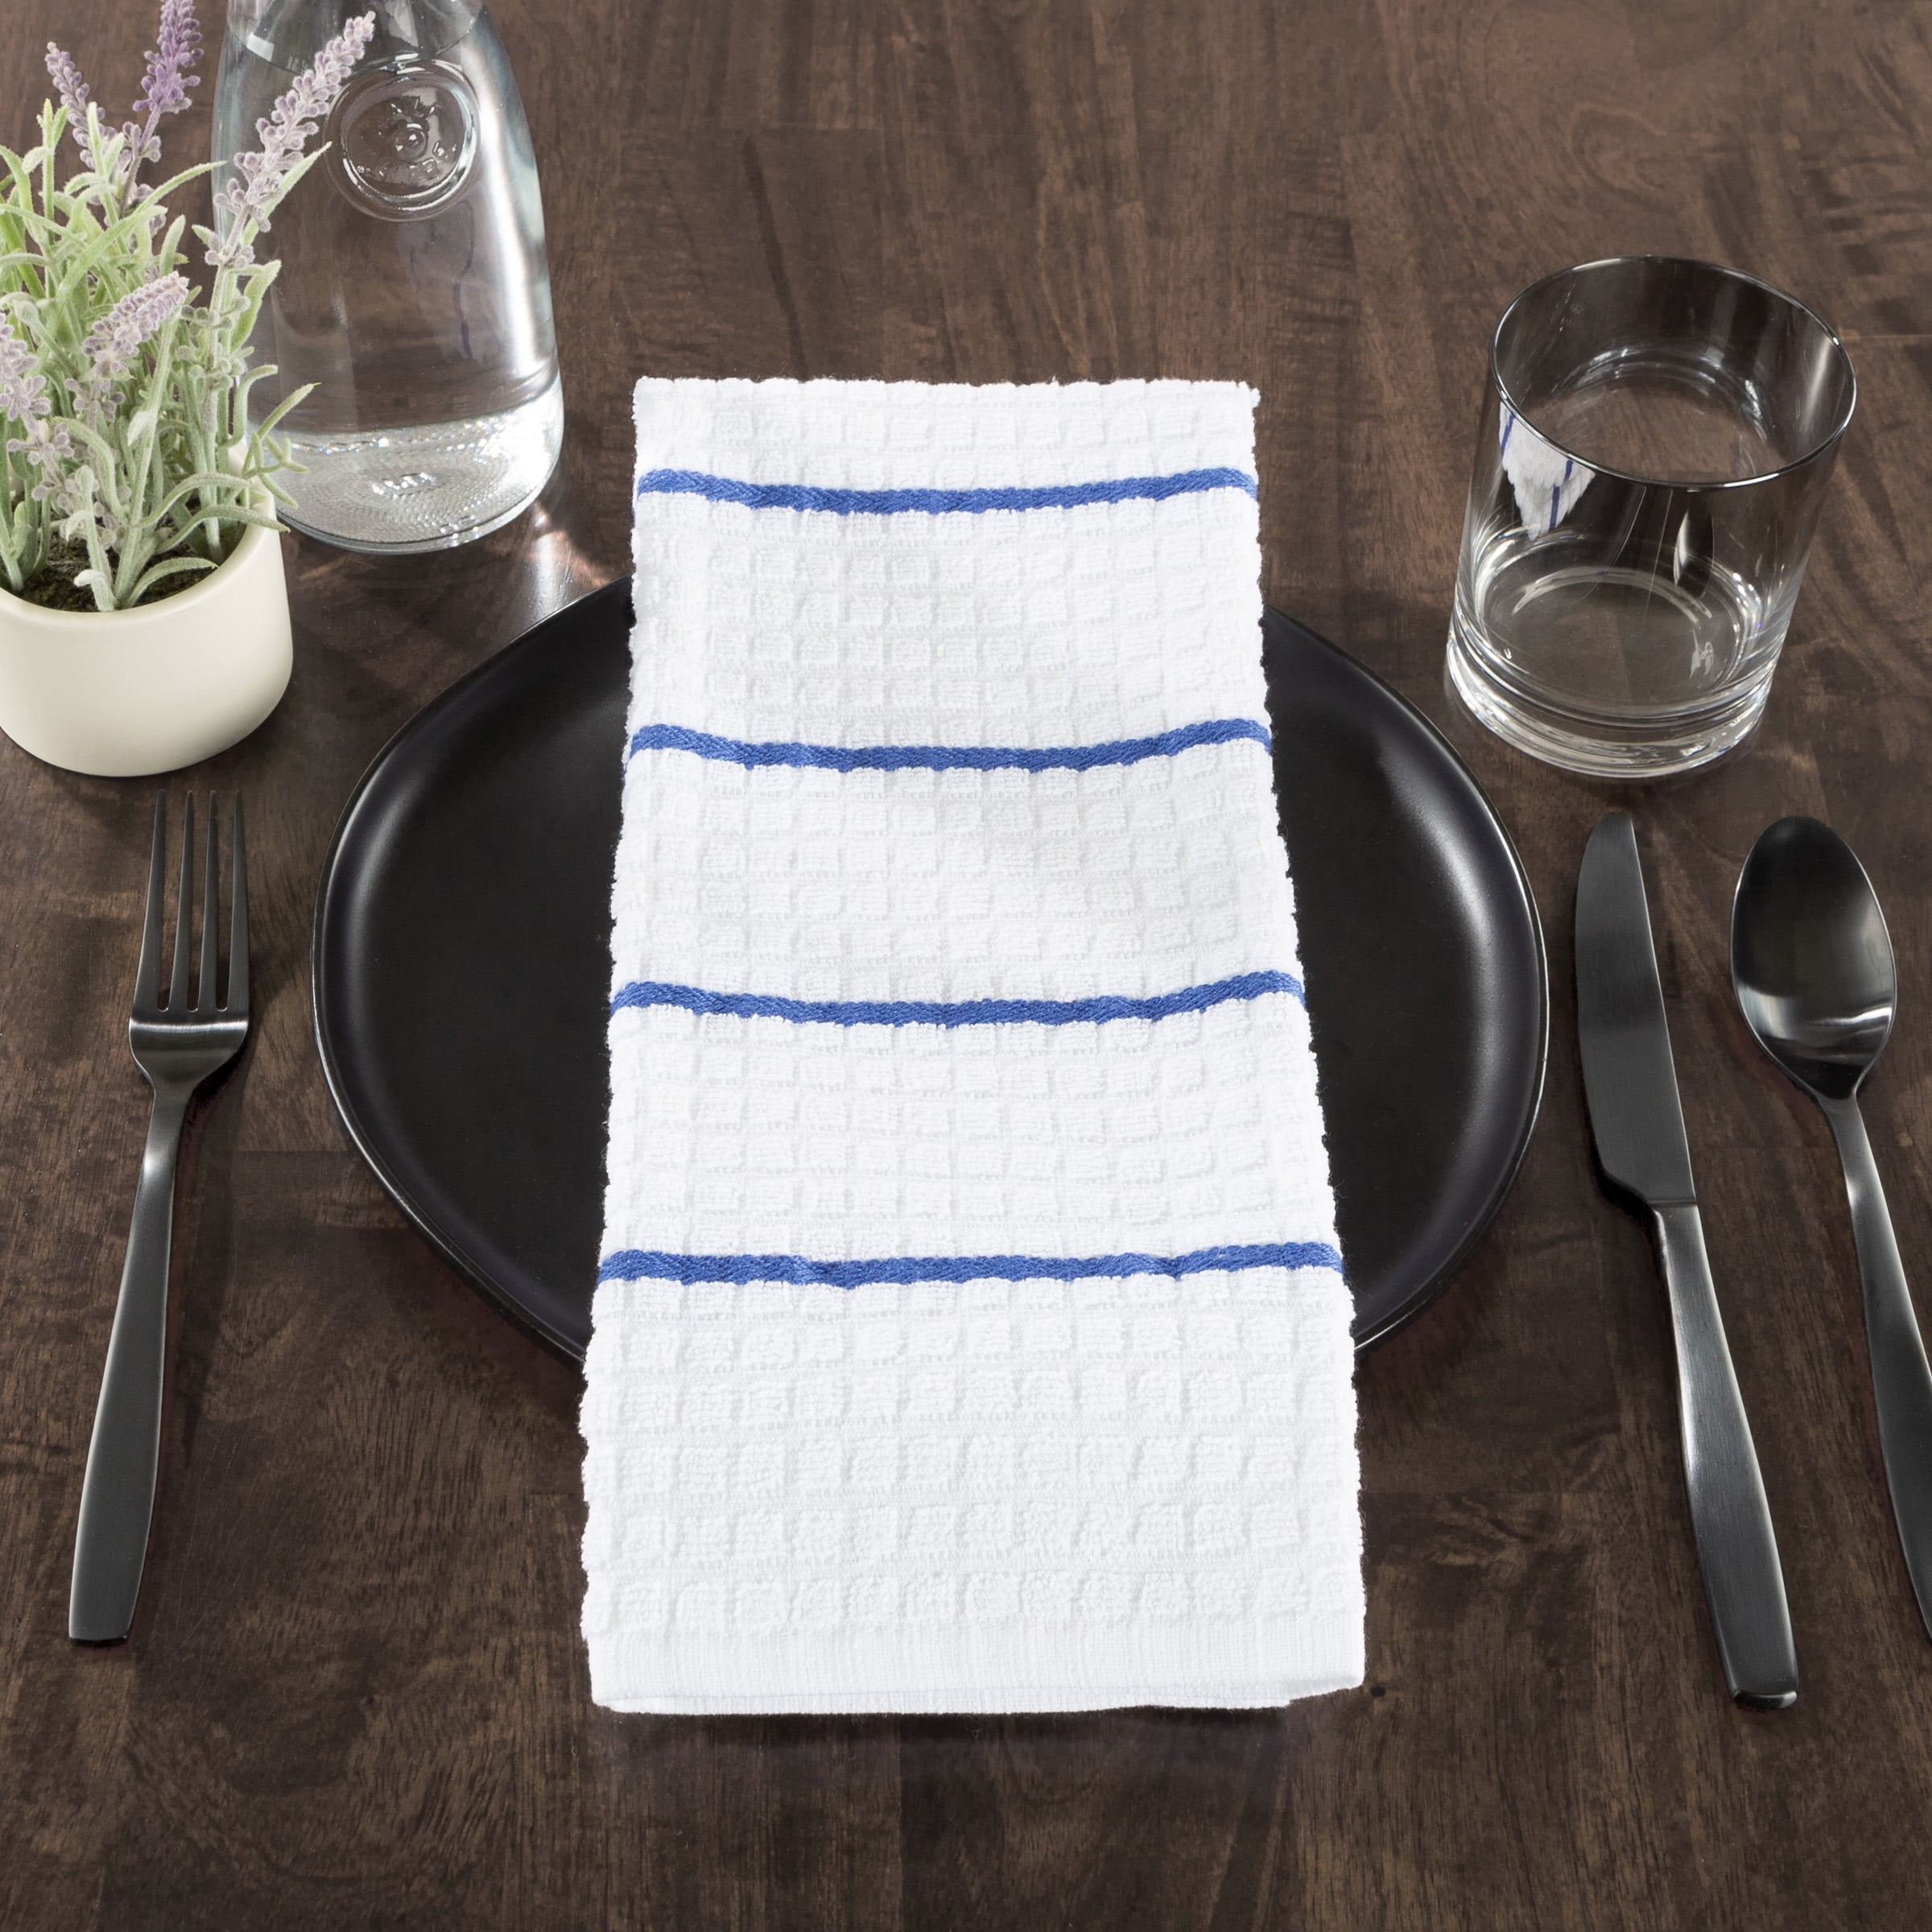 AVA KITCHEN TOWELS (3 ) OVERSIZED WHITE GRAY STRIPES 100% COTTON